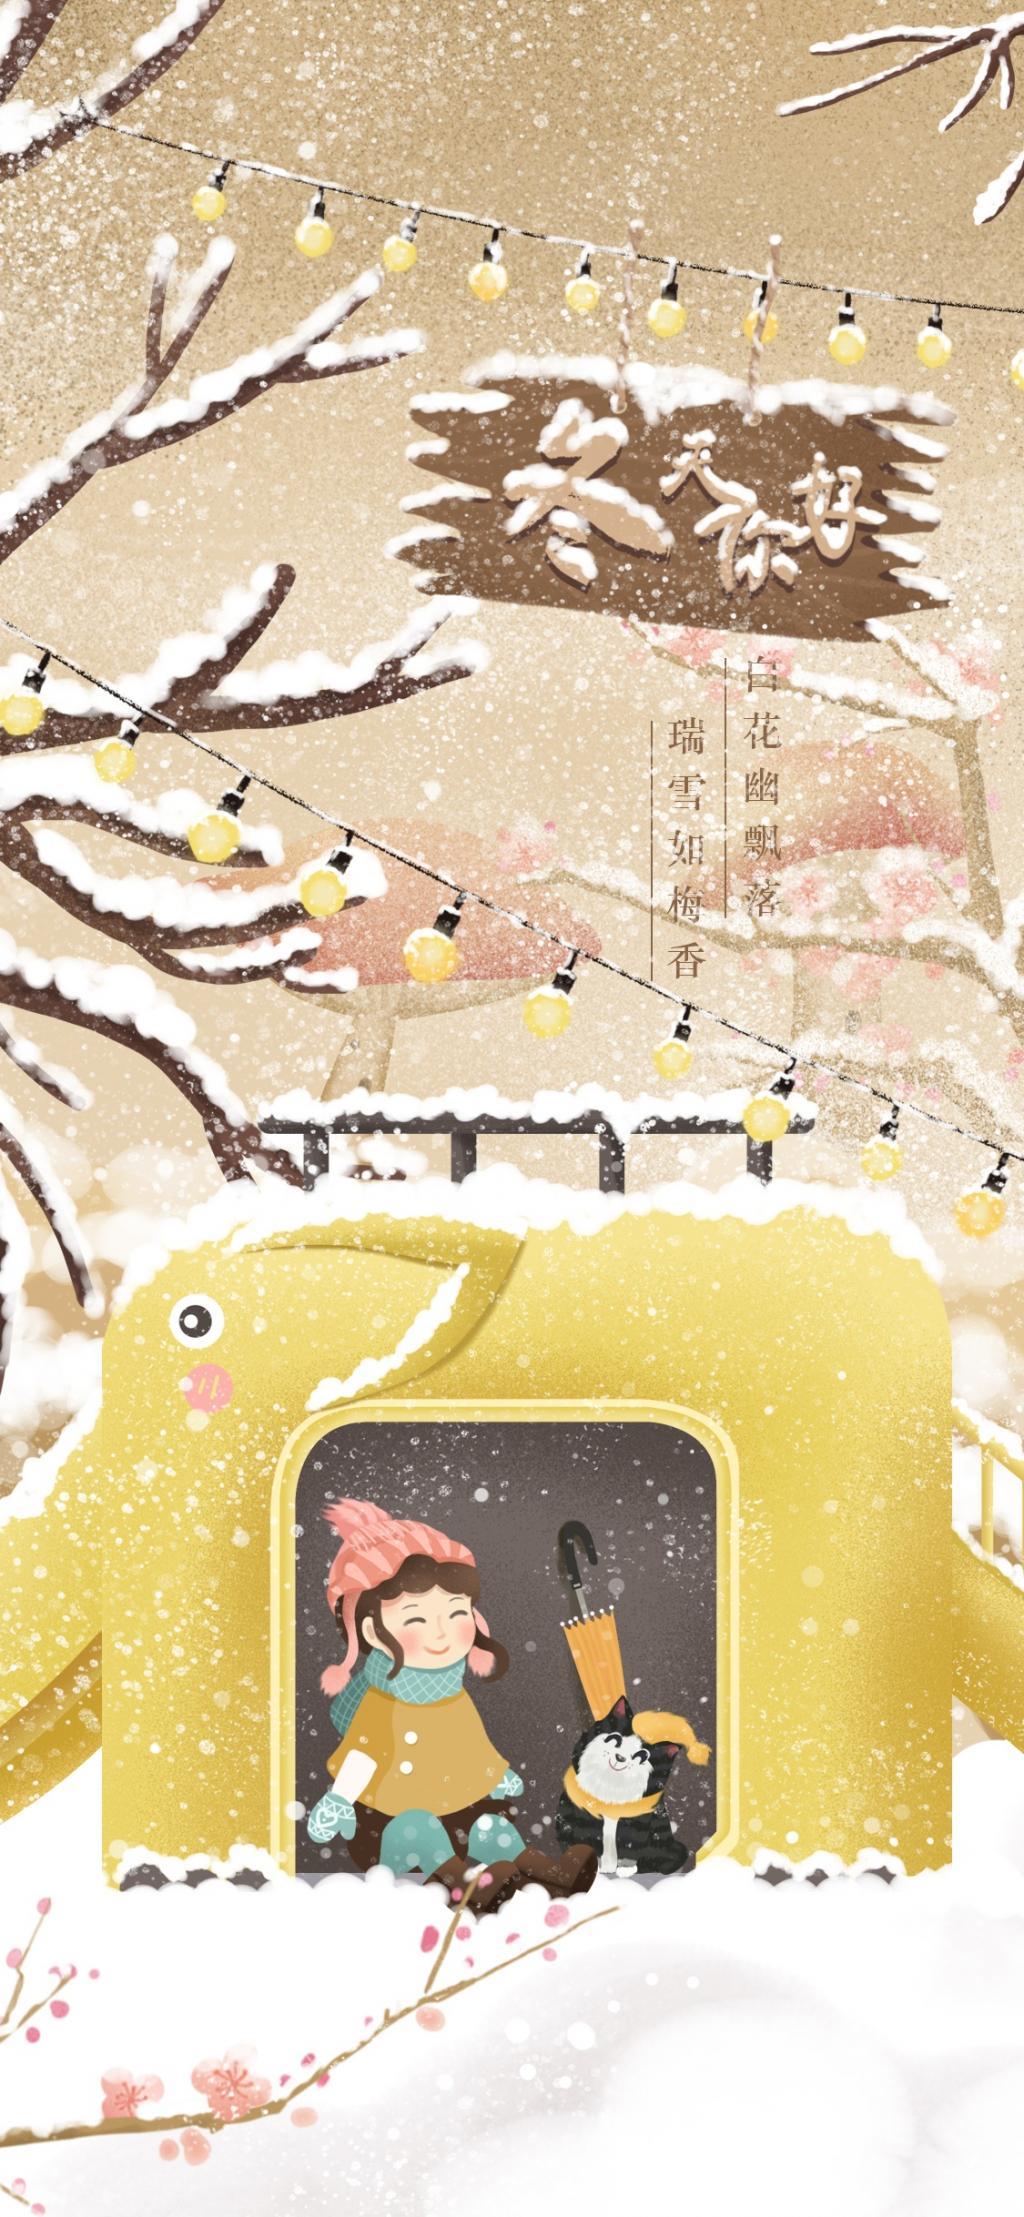 冬天你好精选躲雪的女孩和小狗温馨唯美手绘插画图片